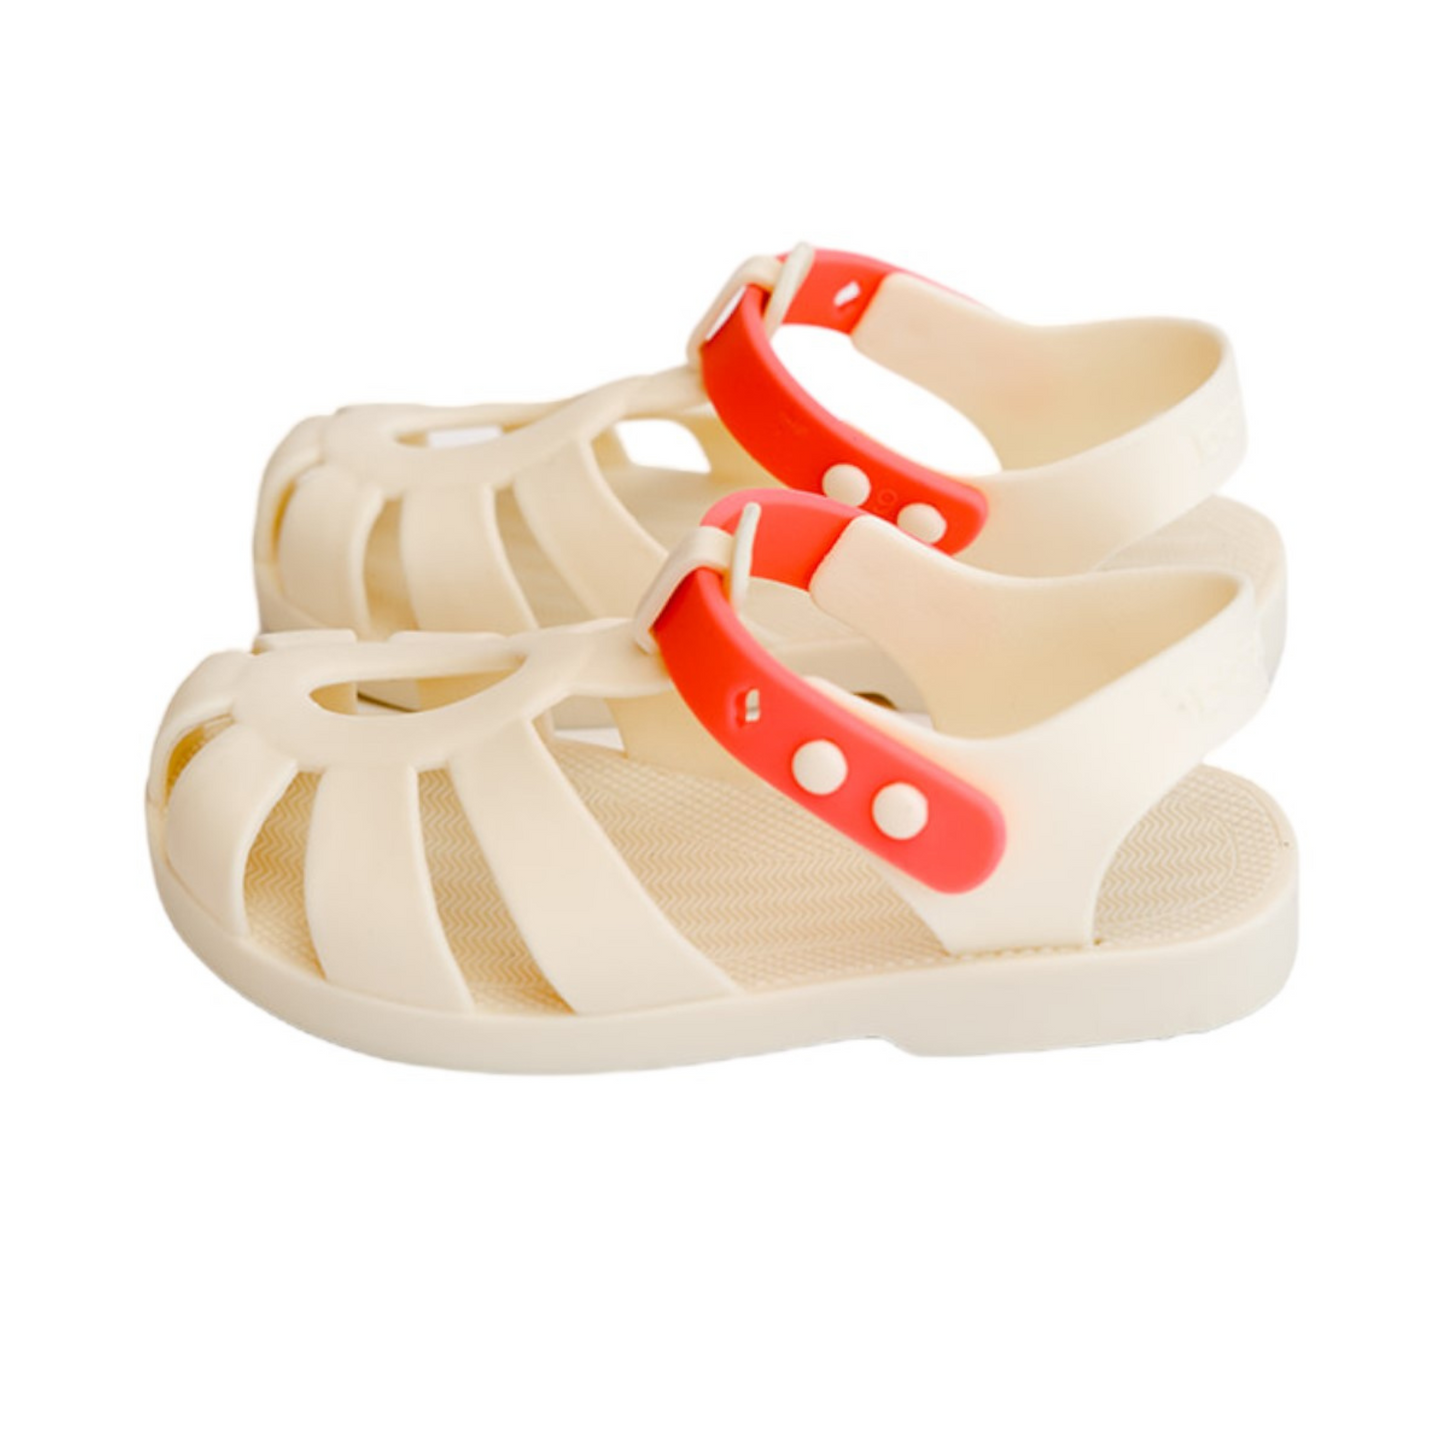 Buttermelon Sandals - Various Sizes